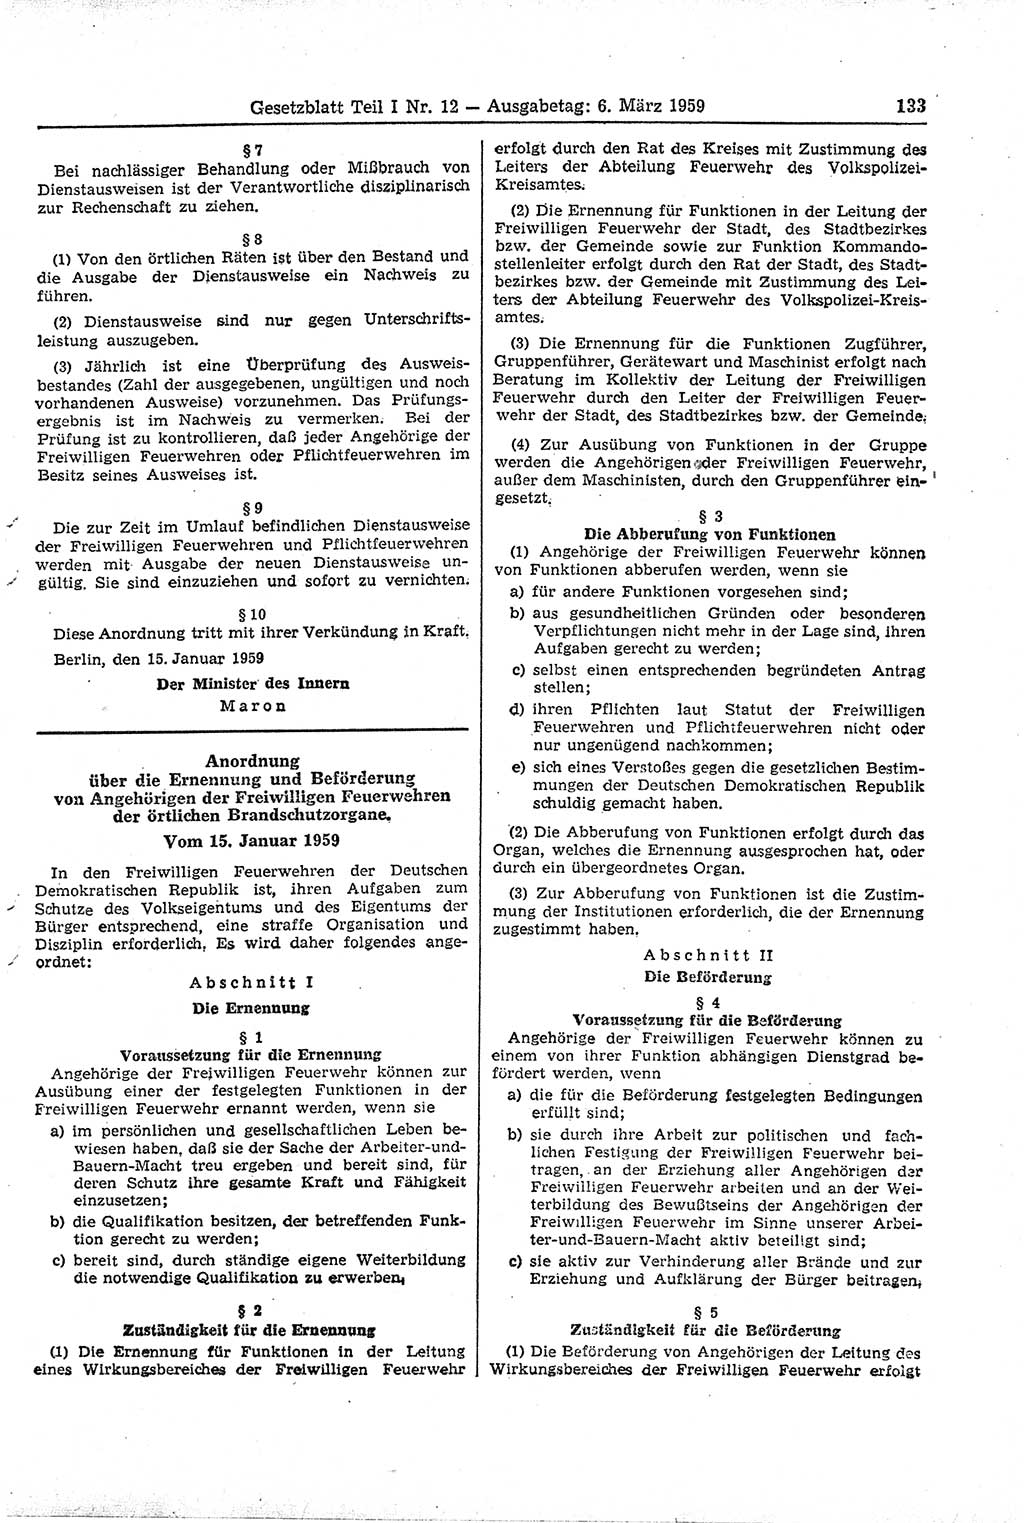 Gesetzblatt (GBl.) der Deutschen Demokratischen Republik (DDR) Teil Ⅰ 1959, Seite 133 (GBl. DDR Ⅰ 1959, S. 133)